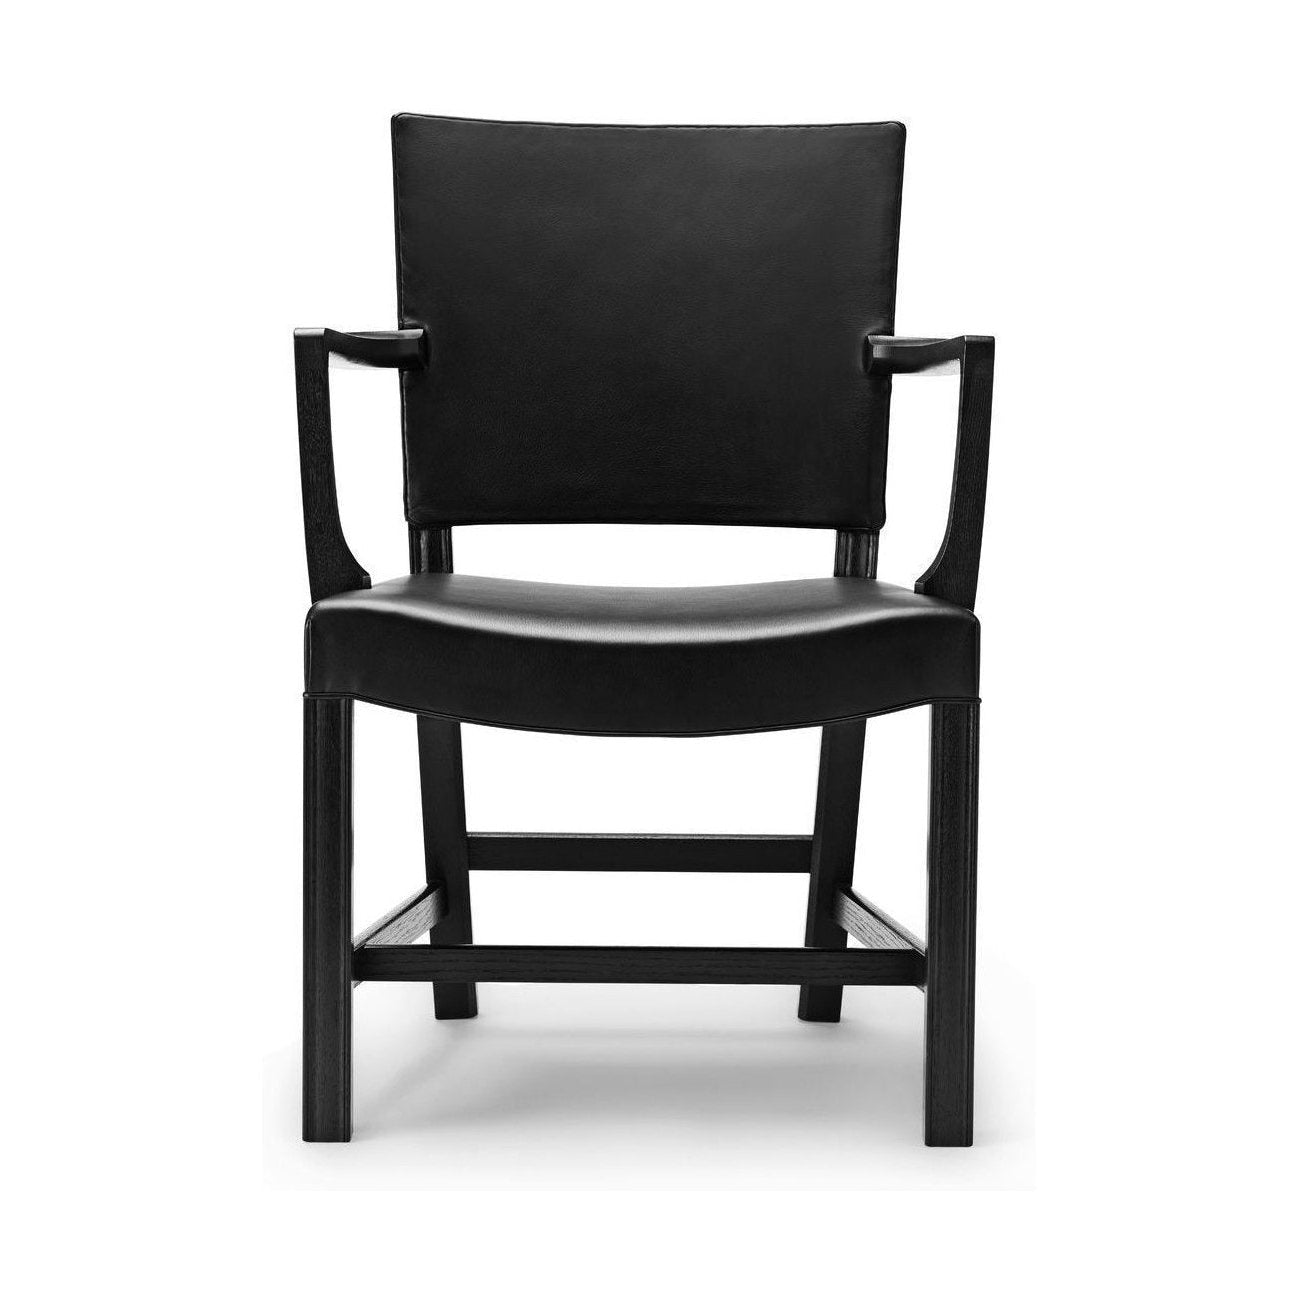 Carl Hansen KK37581 grand fauteuil rouge, chêne noir / cuir noir